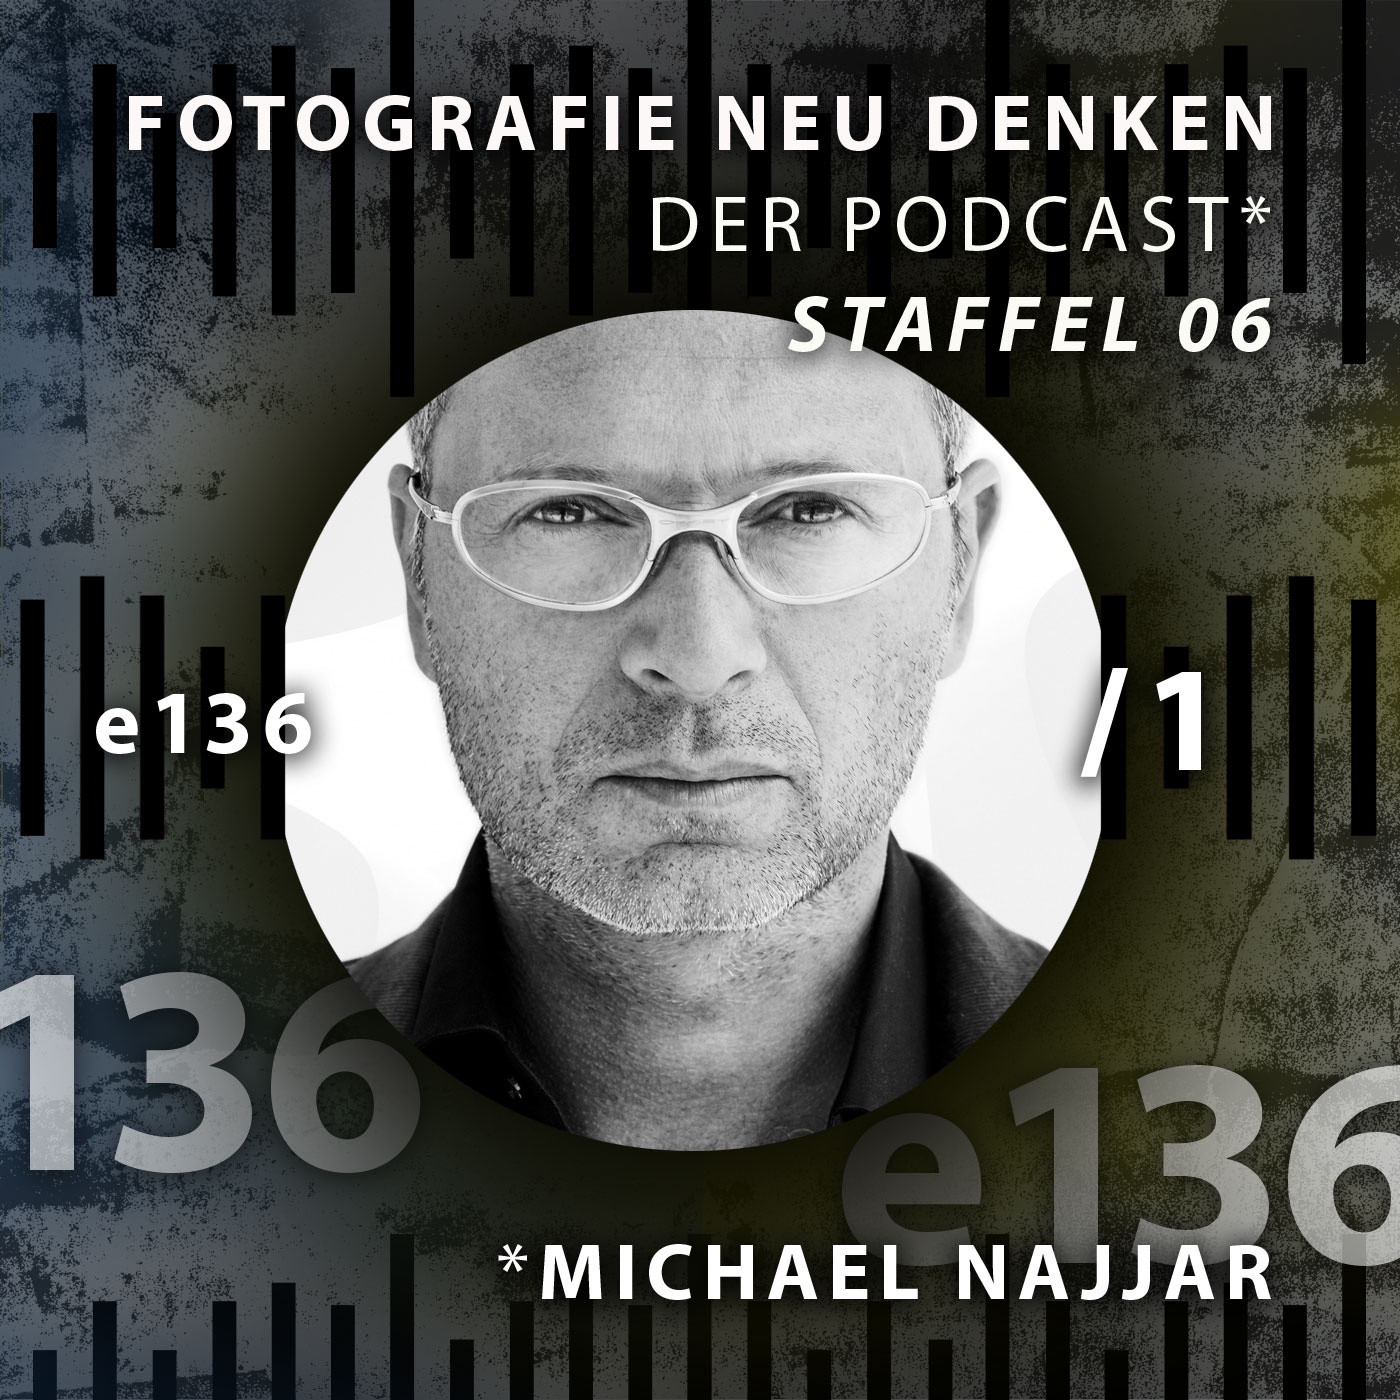 e136 Michael Najjar, Extrem-Foto- und Video-Künstler aus Berlin. Teil 1